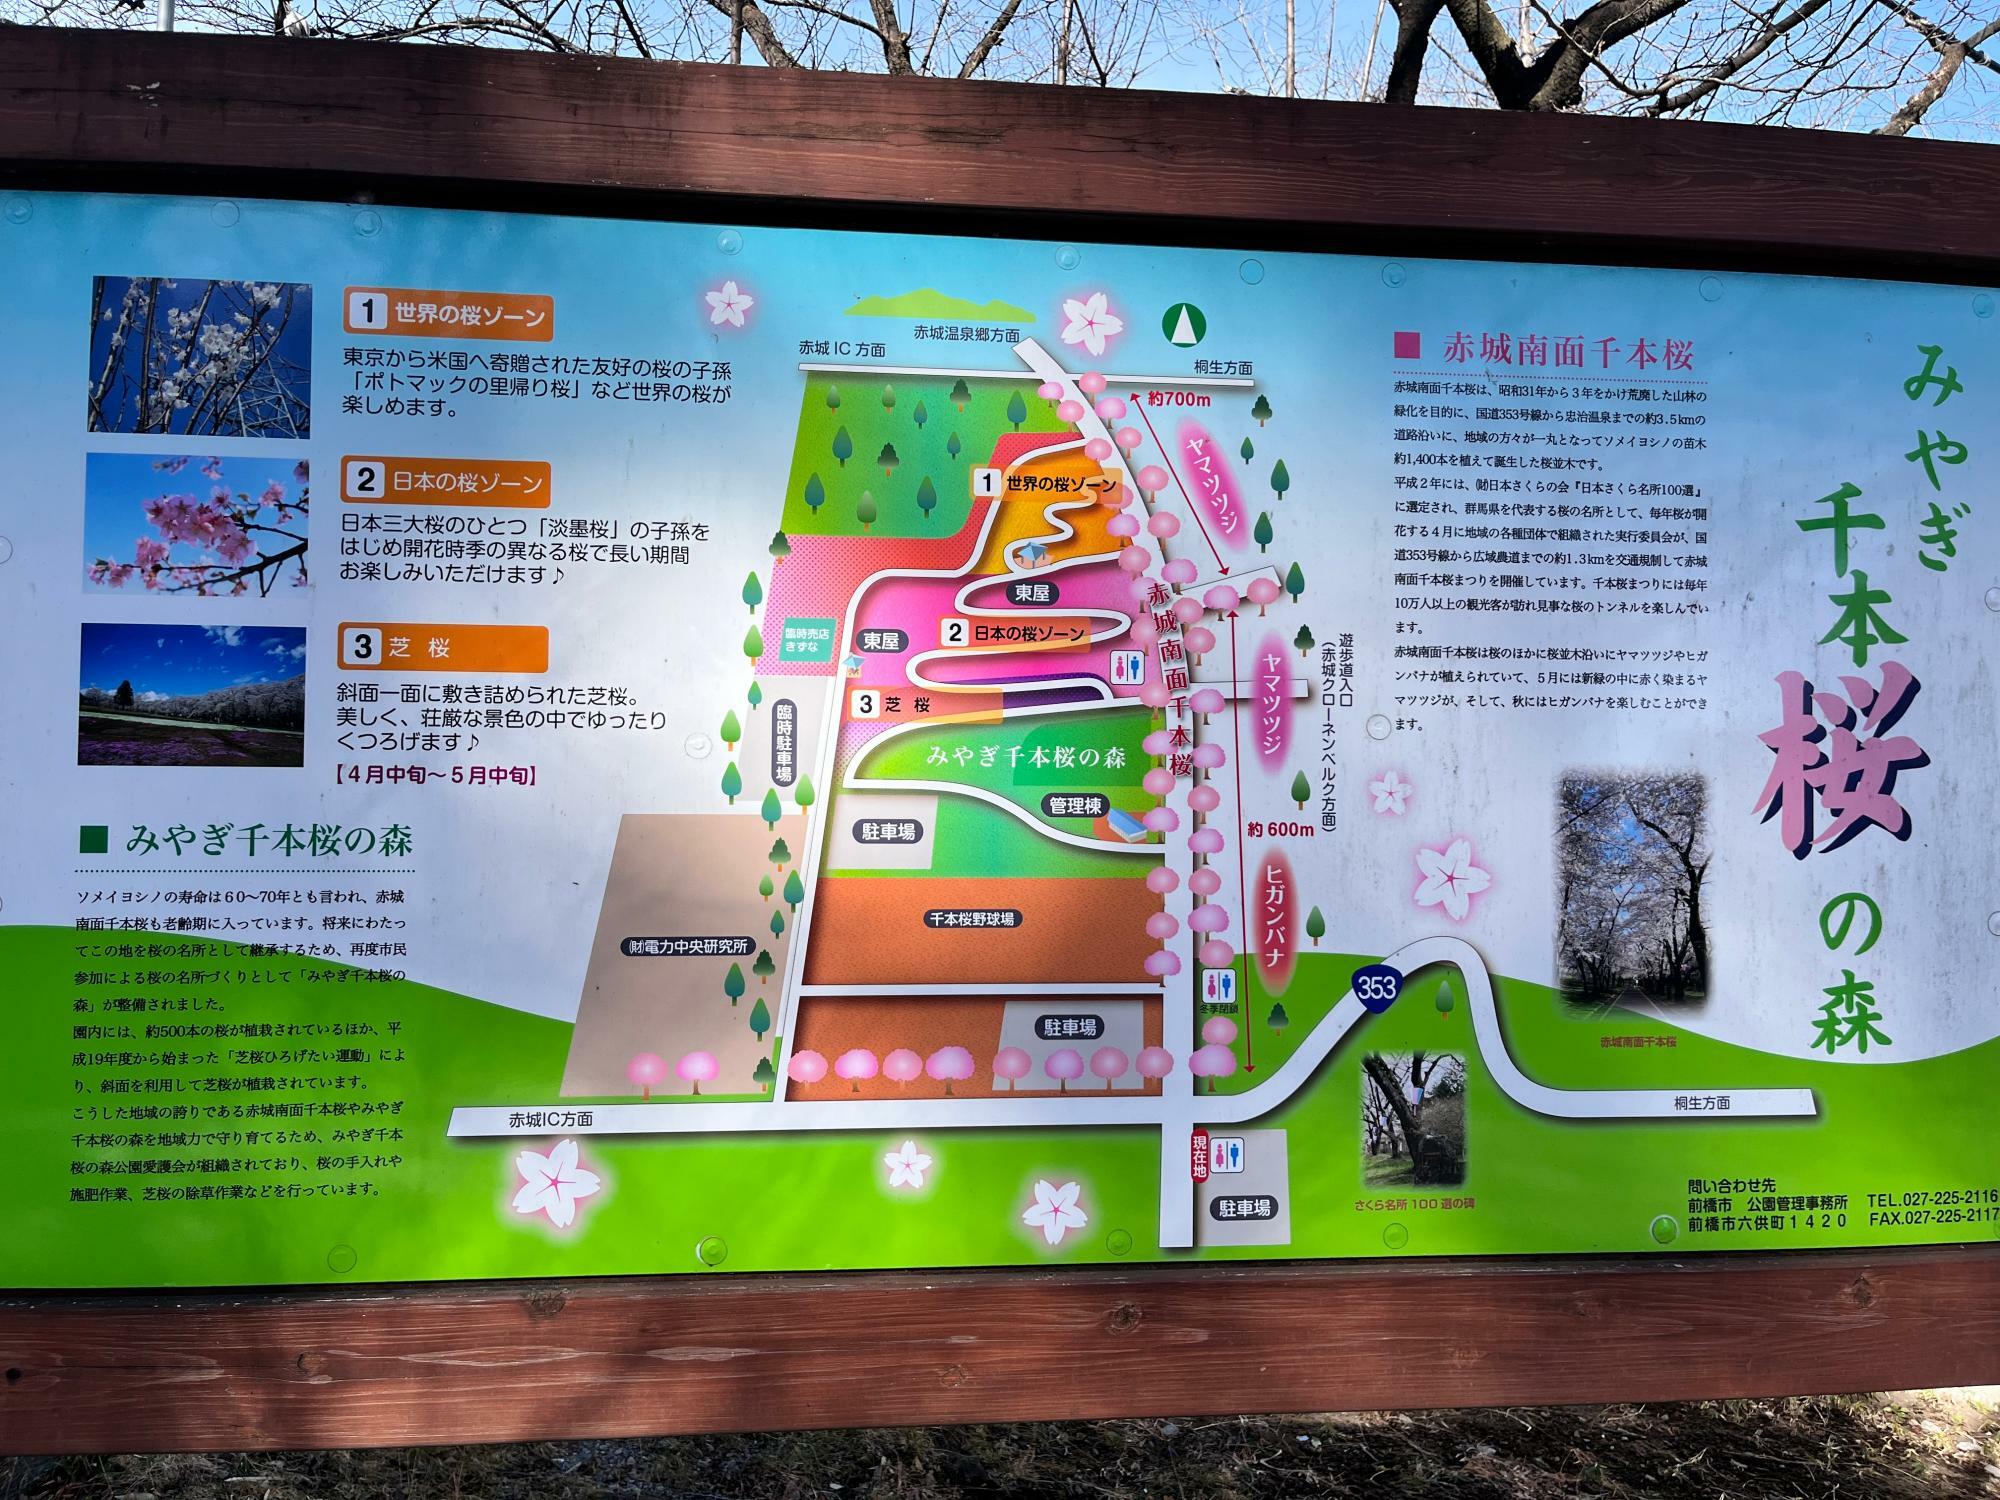 「みやぎ千本桜の森公園」の桜ゾーンの案内板